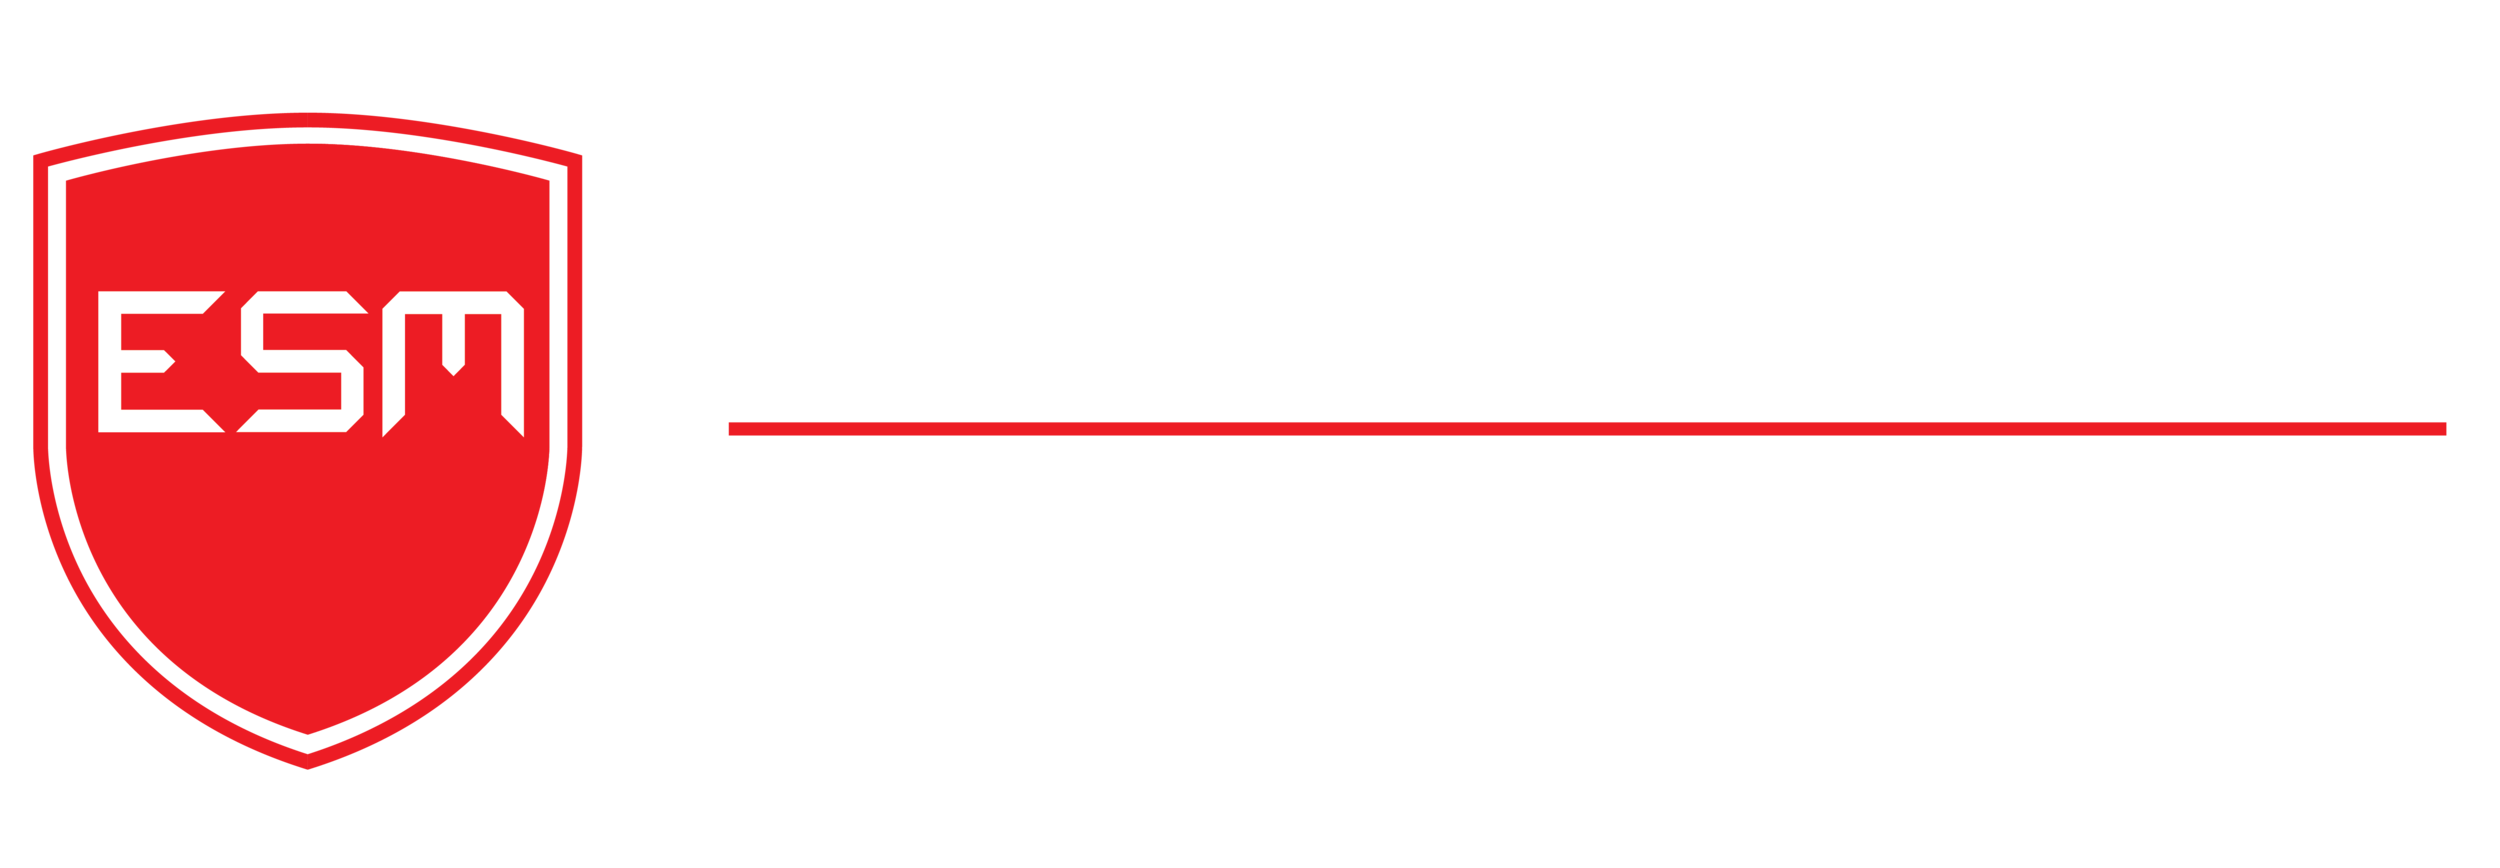 EASTSIDE MOTORING